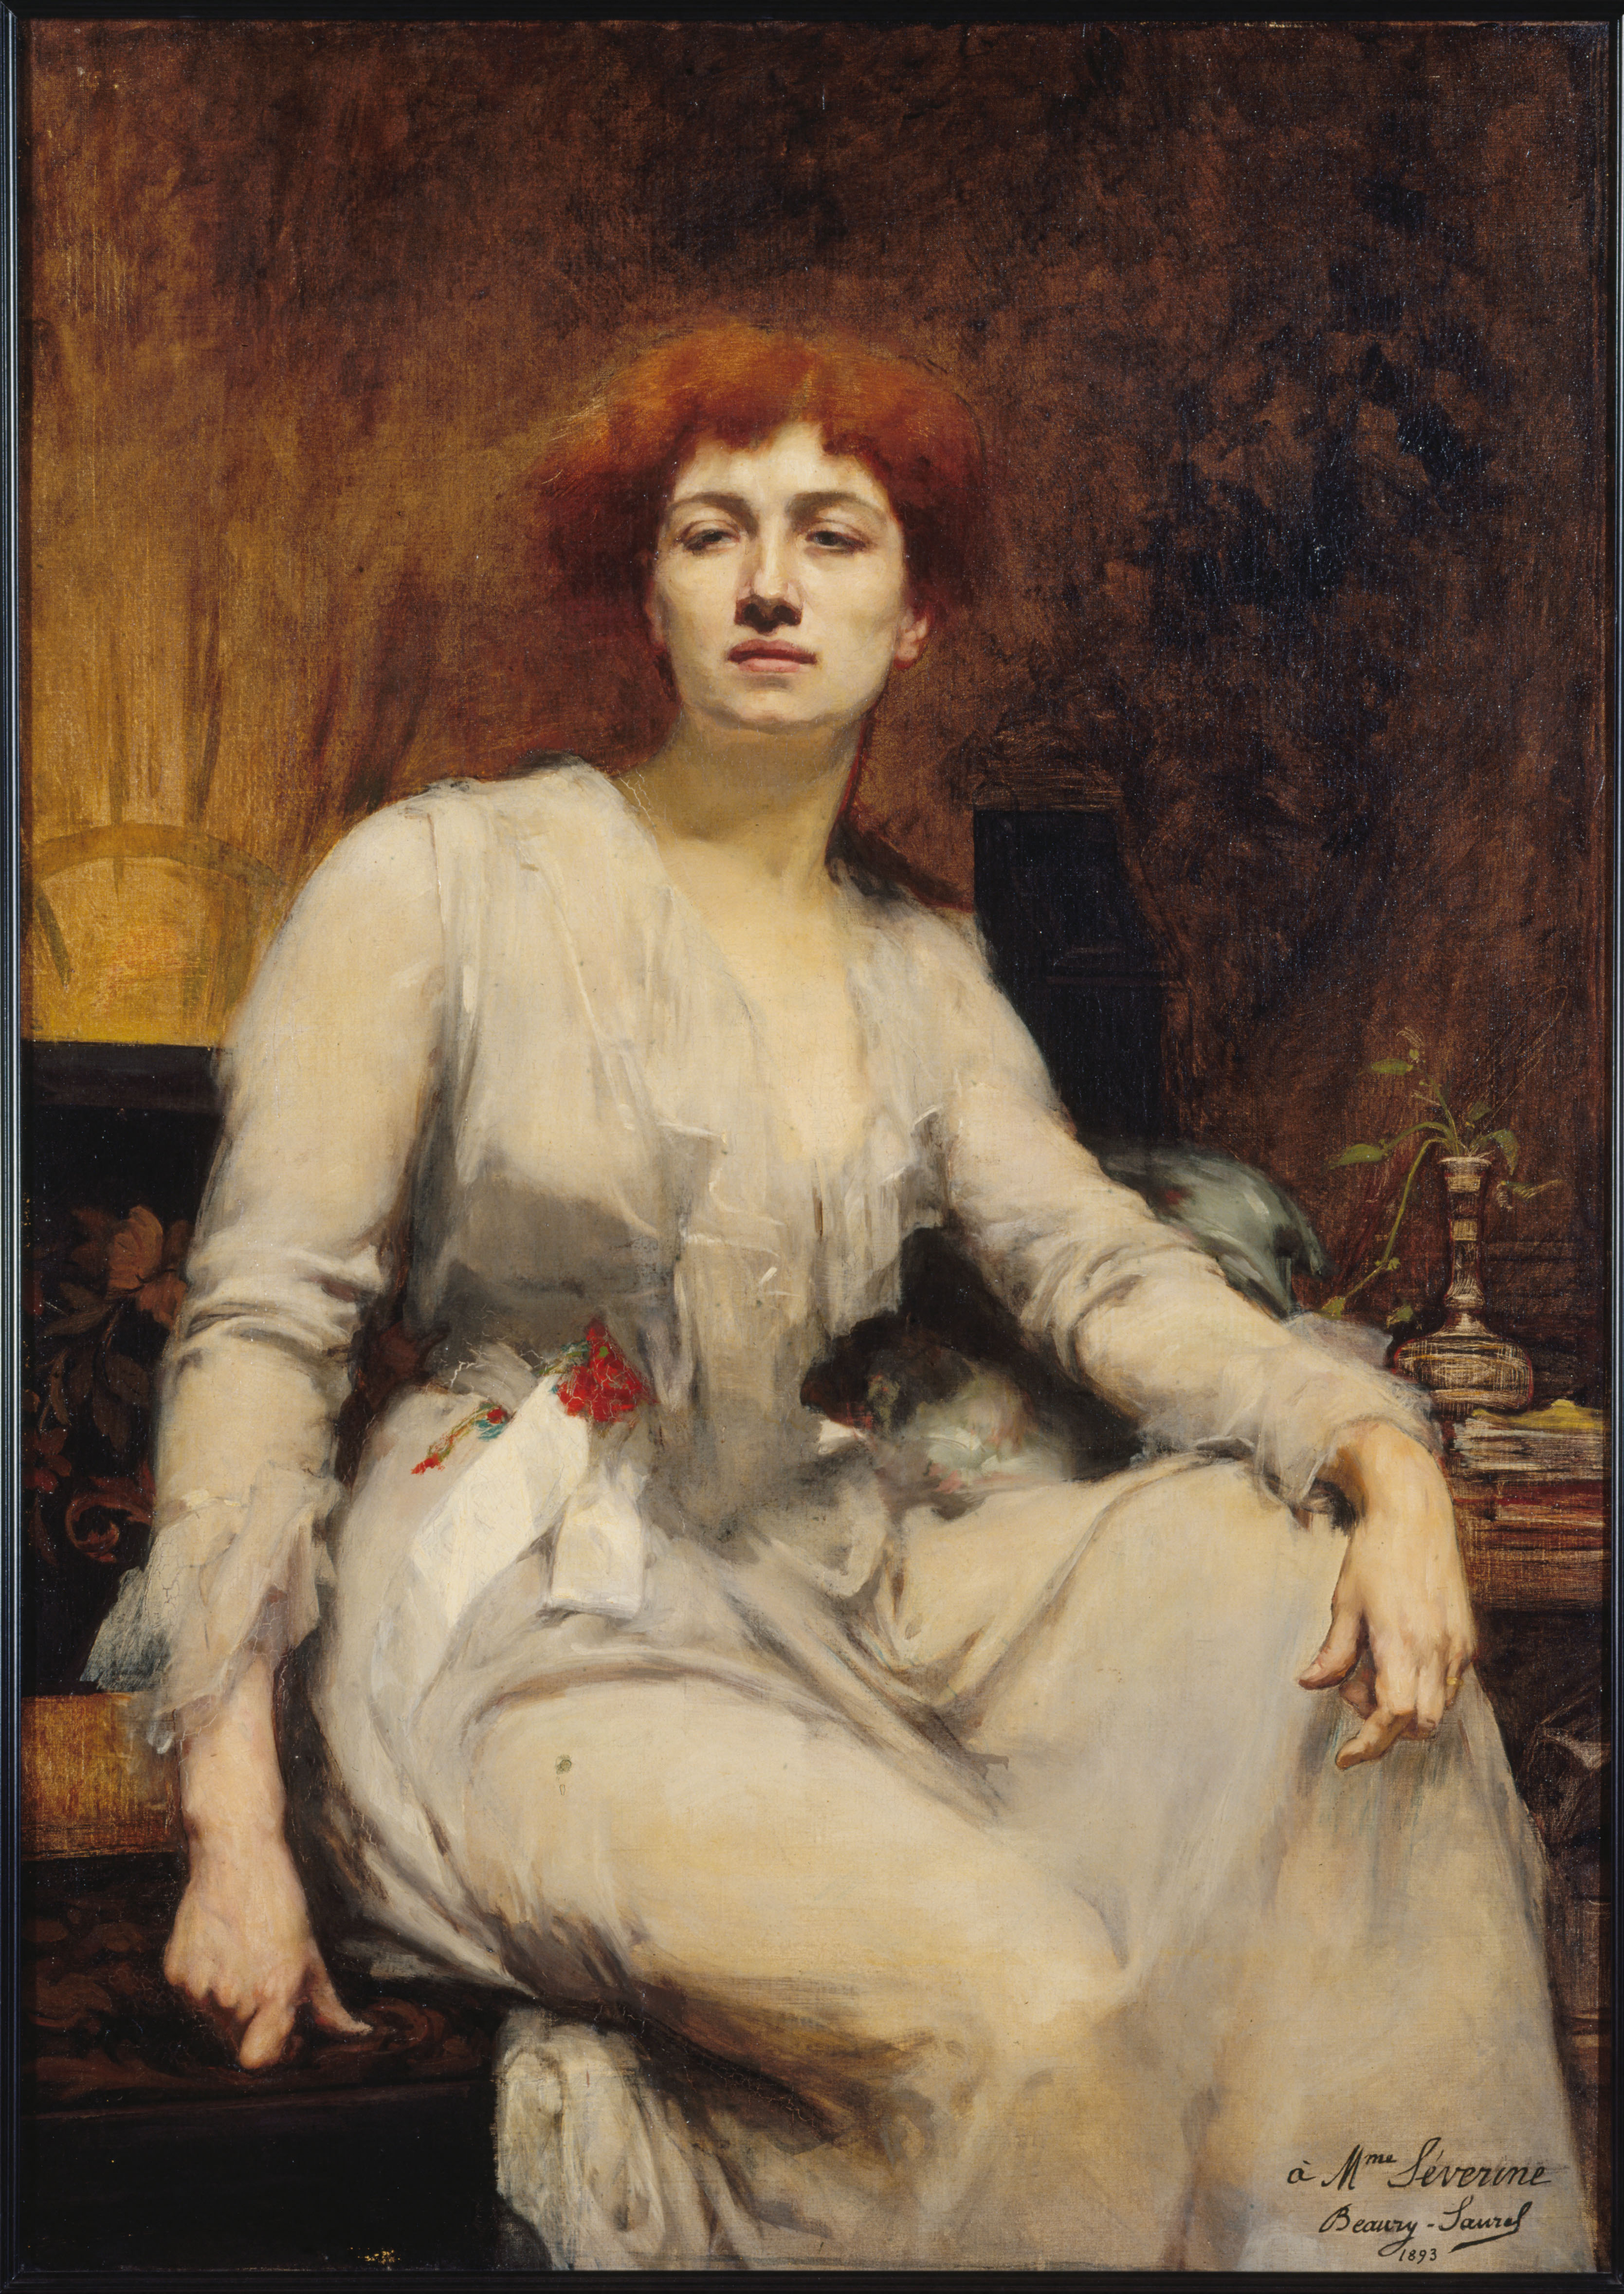 塞維瑞恩 by Amélie Beaury-Saurel - 1893 - 122.5 x 88 cm 